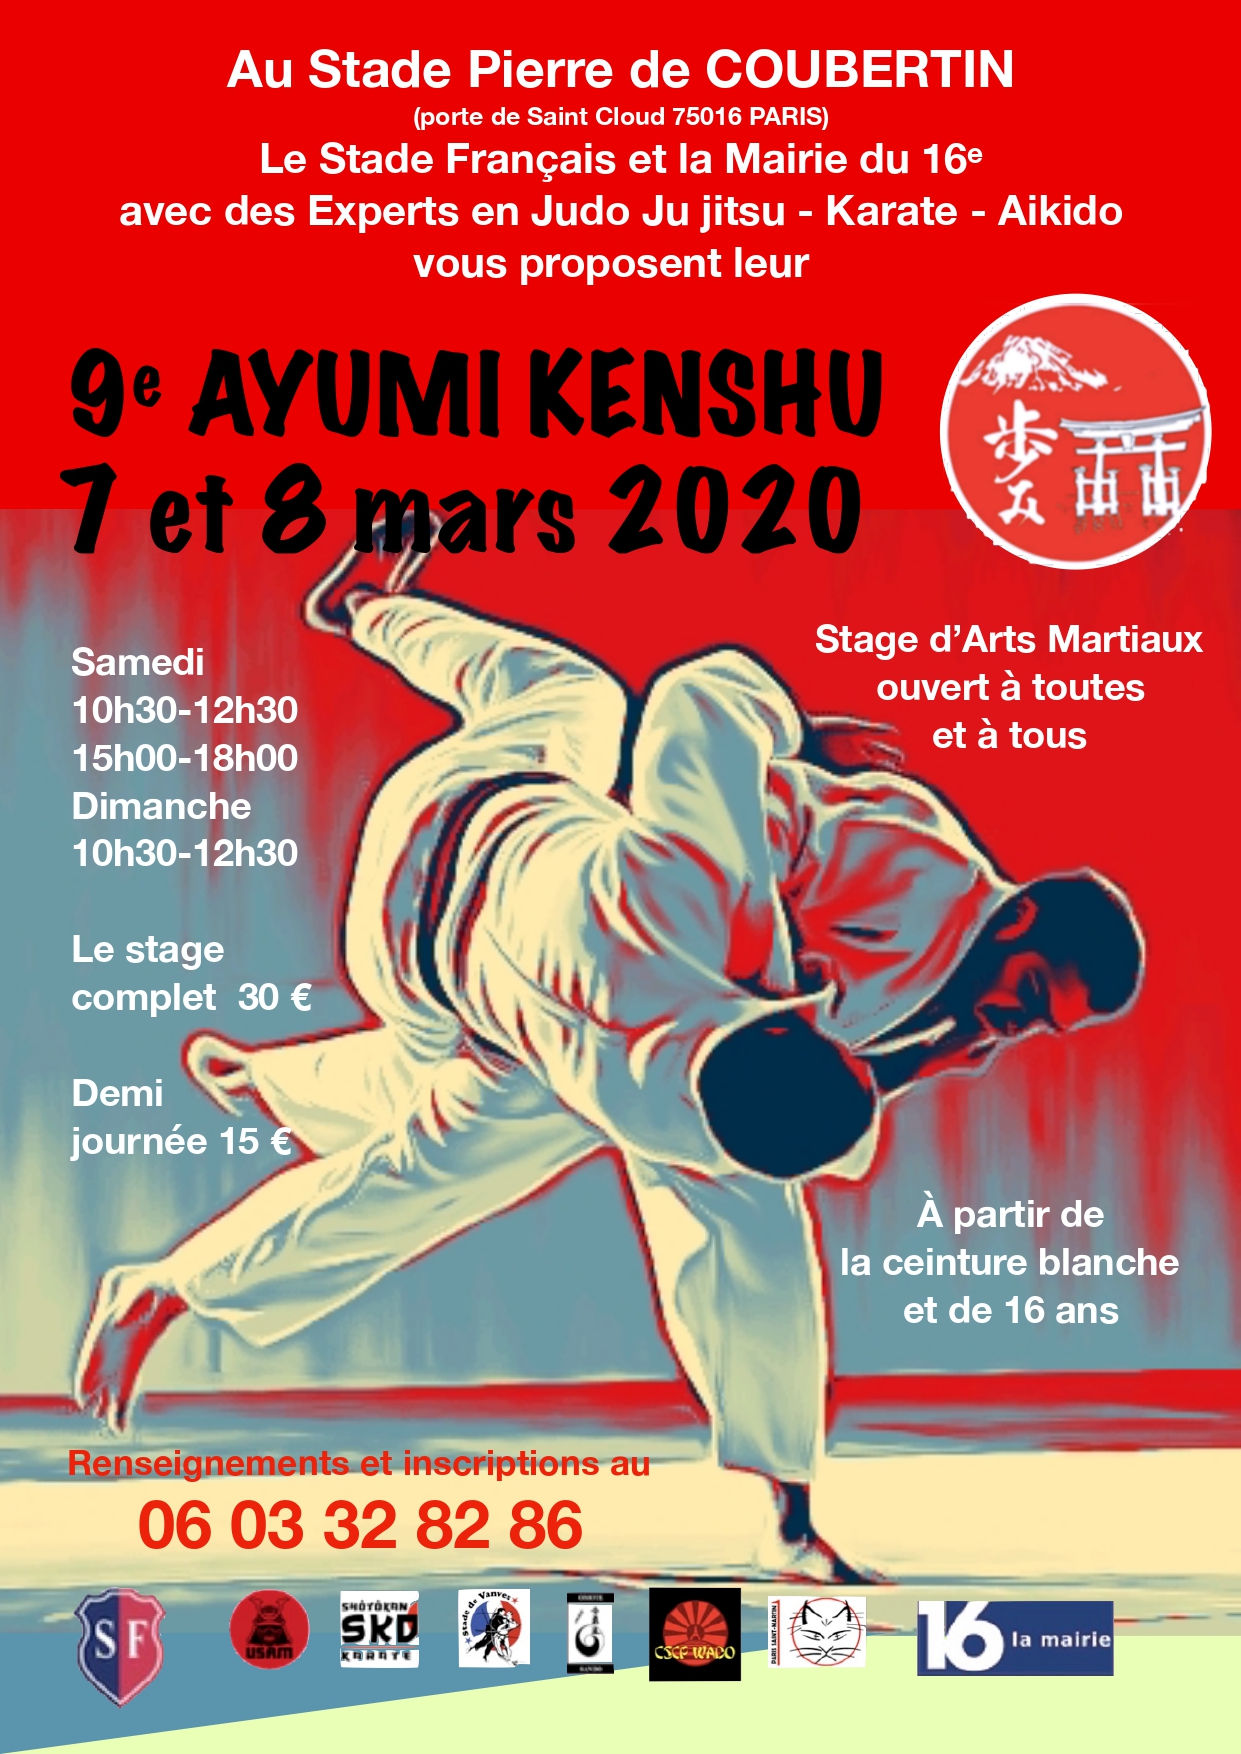 Lire la suite à propos de l’article Ayumi Kenshu 2020